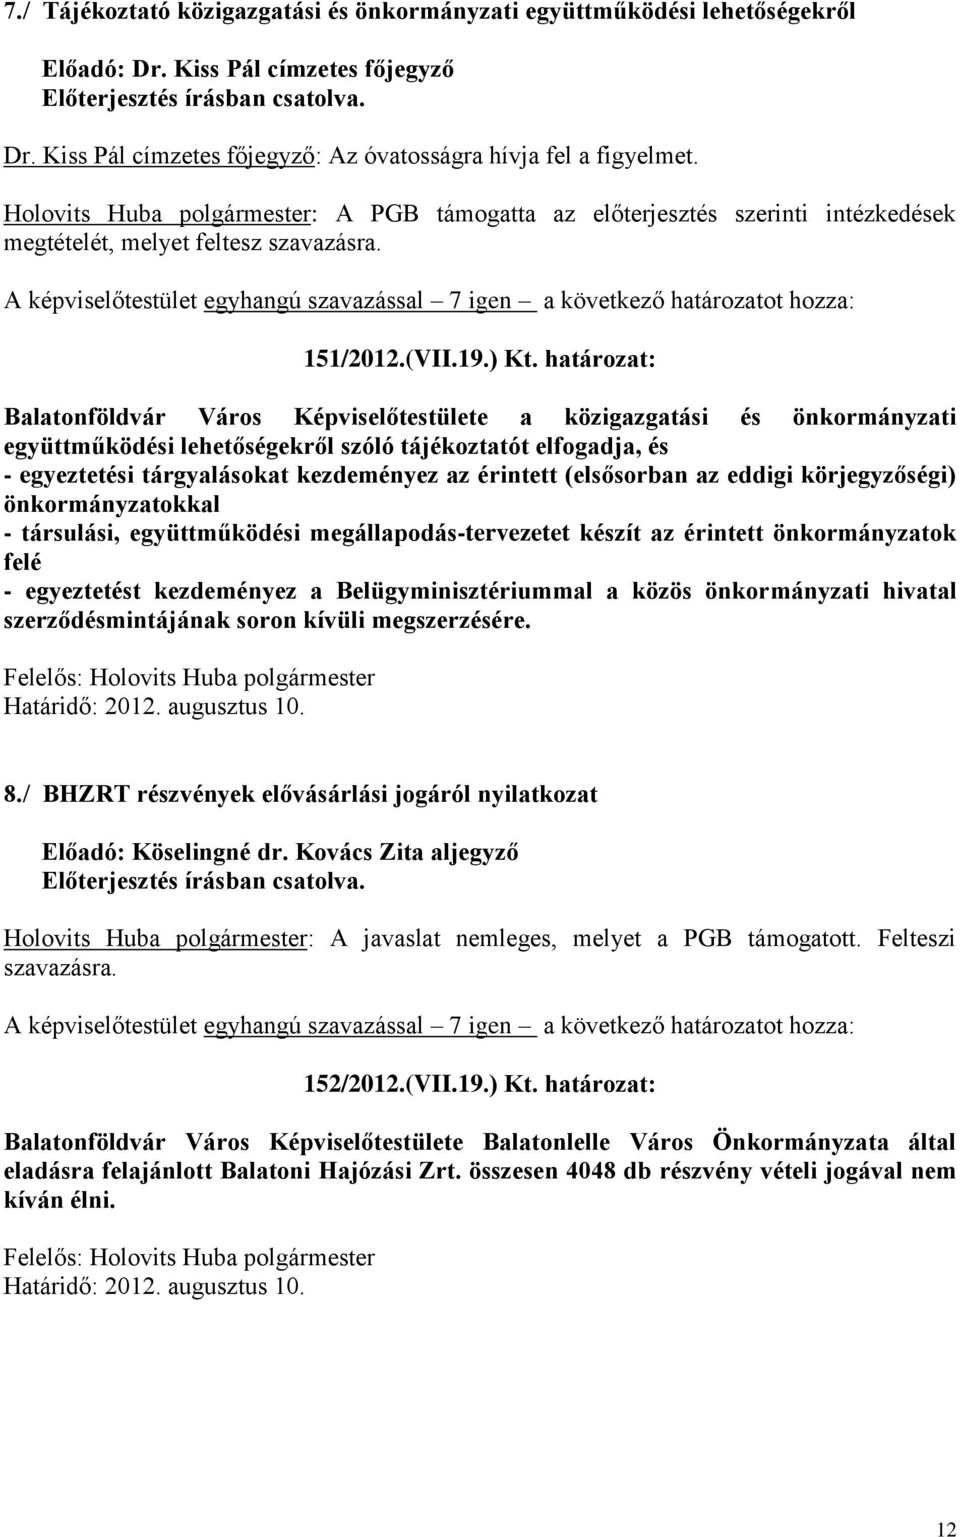 határozat: Balatonföldvár Város Képviselőtestülete a közigazgatási és önkormányzati együttműködési lehetőségekről szóló tájékoztatót elfogadja, és - egyeztetési tárgyalásokat kezdeményez az érintett